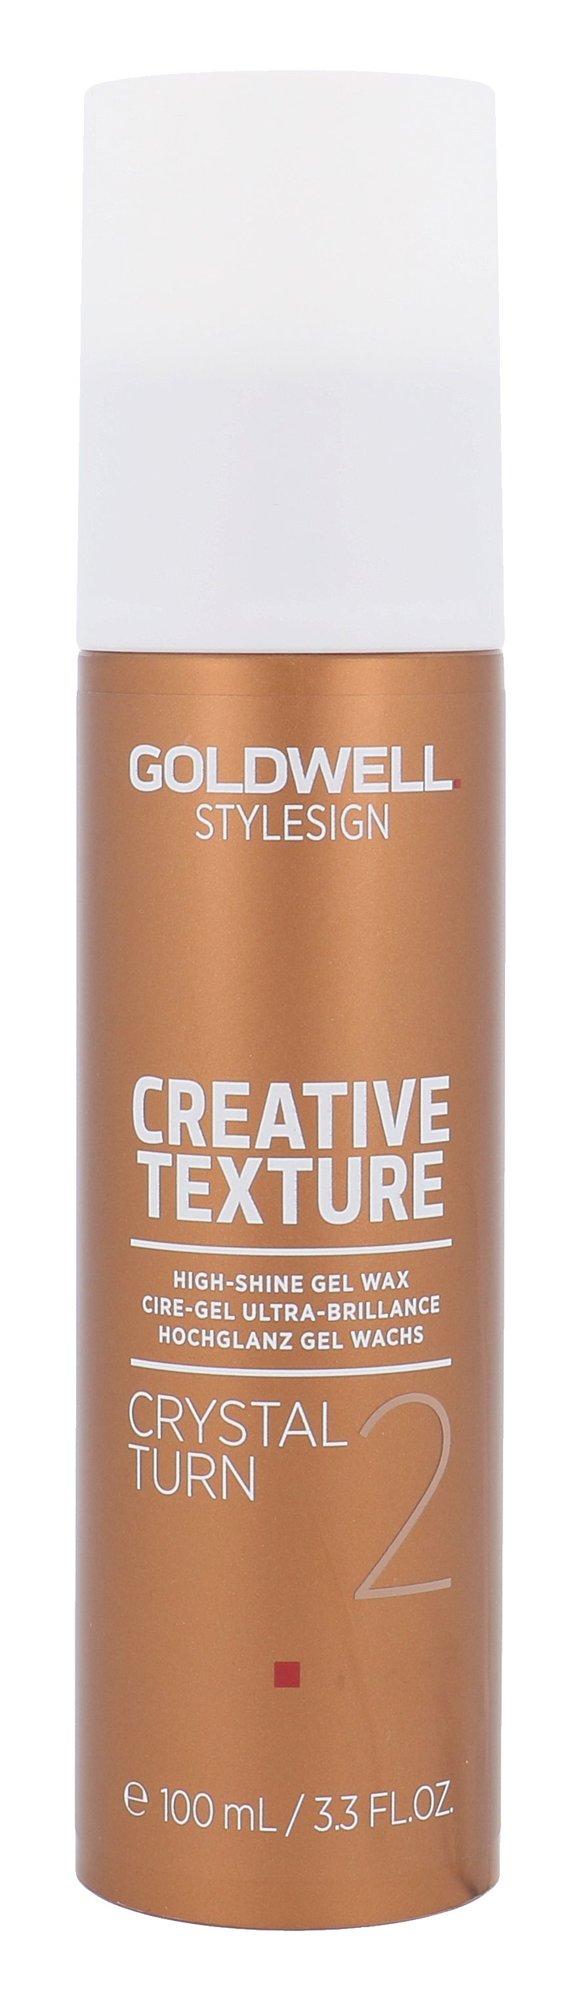 Goldwell Style Sign Creative Texture 100ml plaukų vaškas